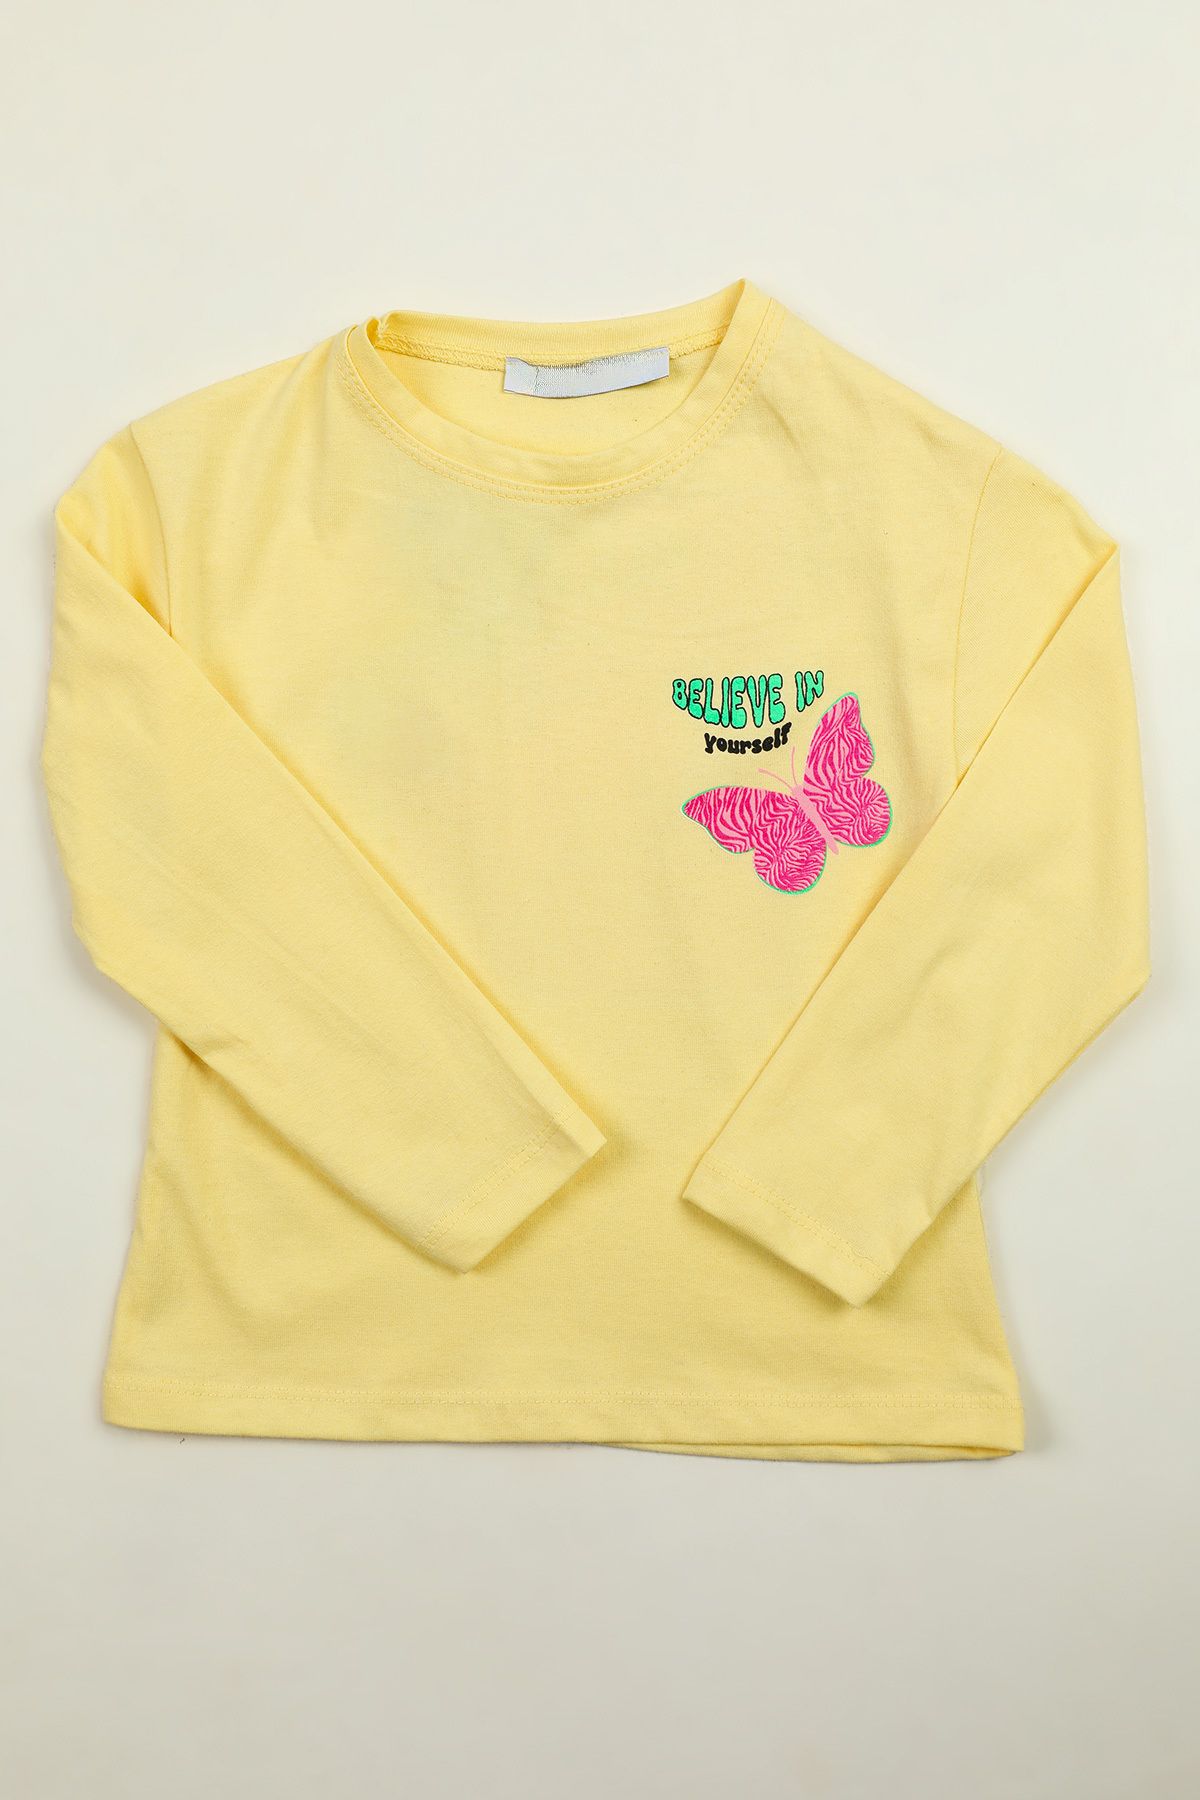 Julude Sarı Kız Çocuk Baskılı Body Sweatshirt